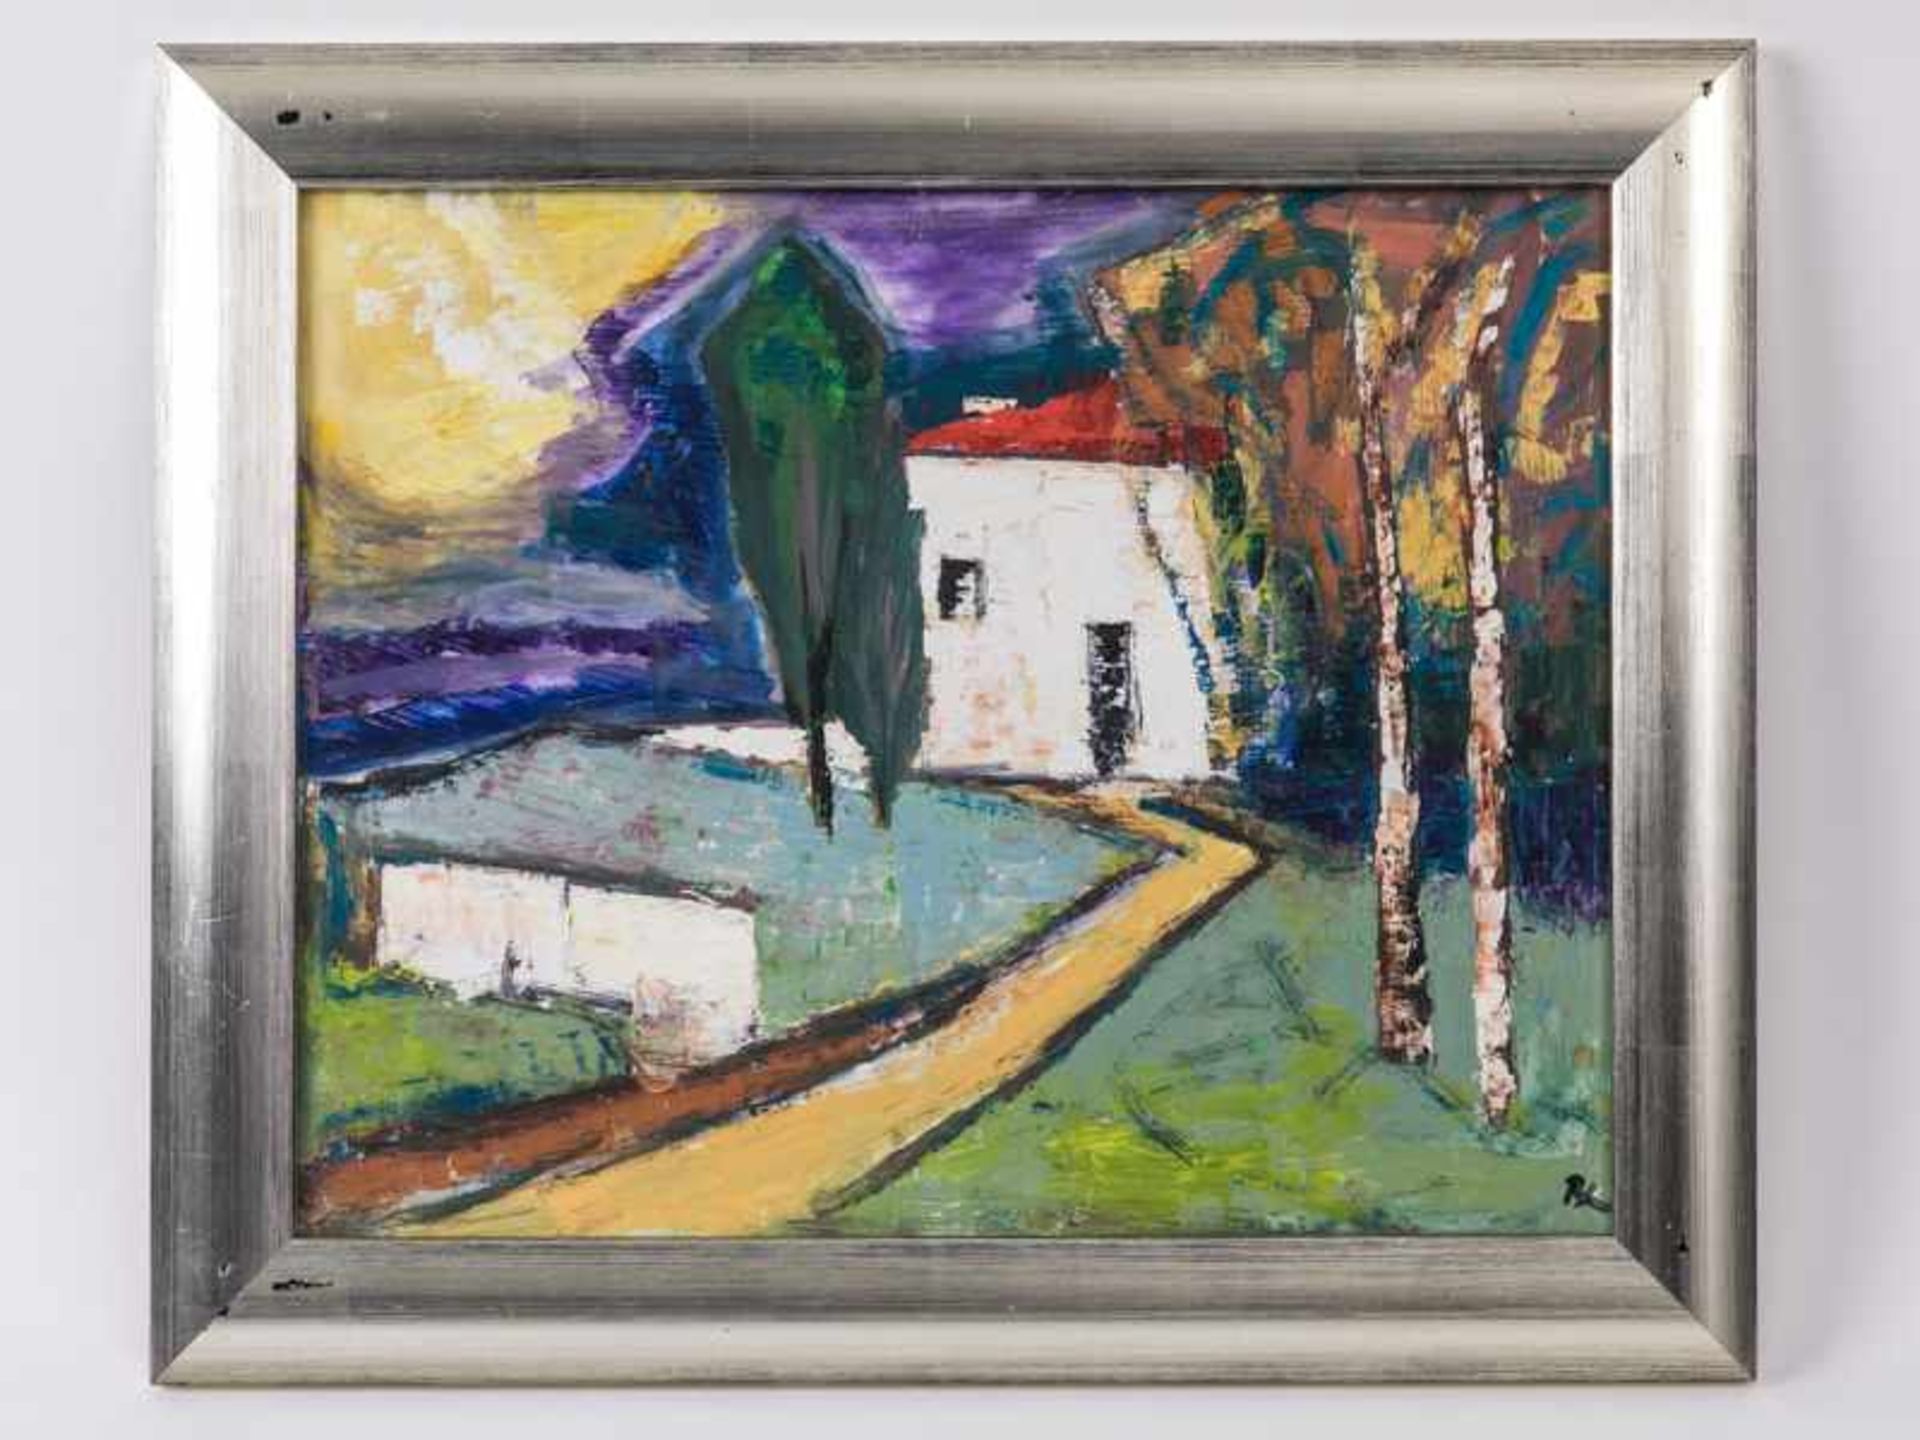 Beckmann, Hans (1913 - 1996). Öl auf Hartfaserplatte. "Haus in der Provence"; modern abstrahiertes